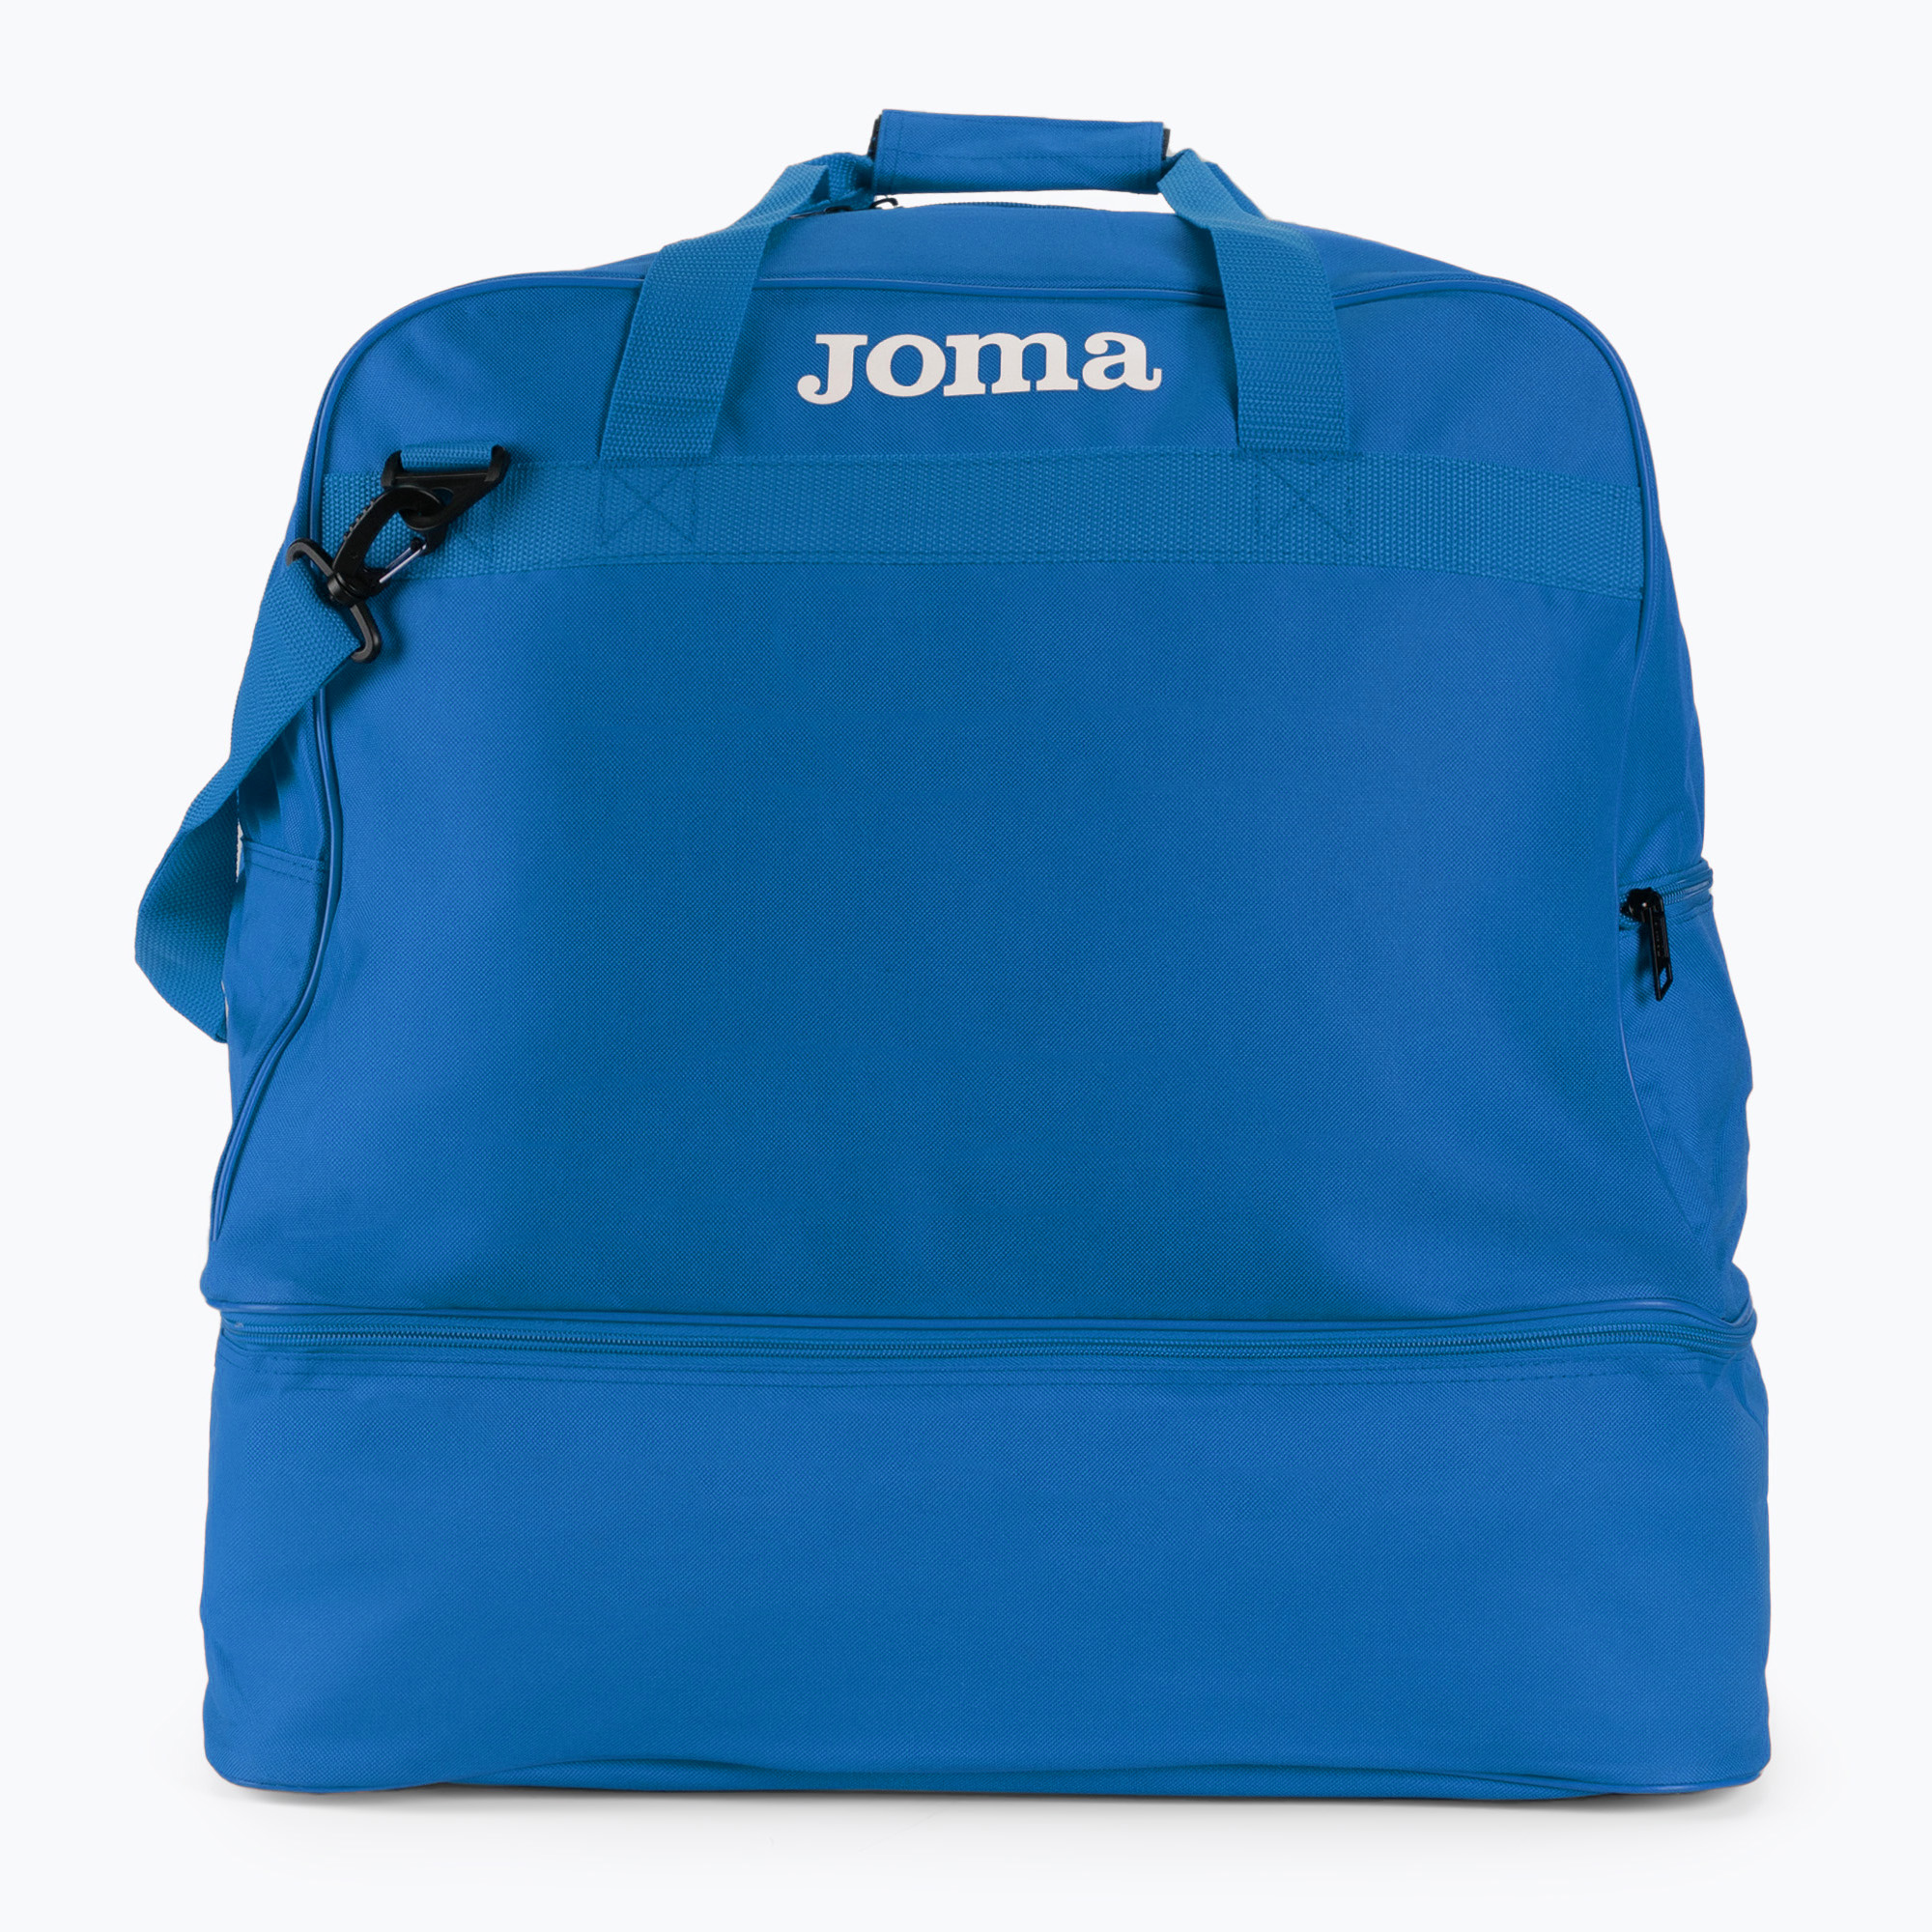 Joma Training III sac de fotbal albastru 400008.700400008.700